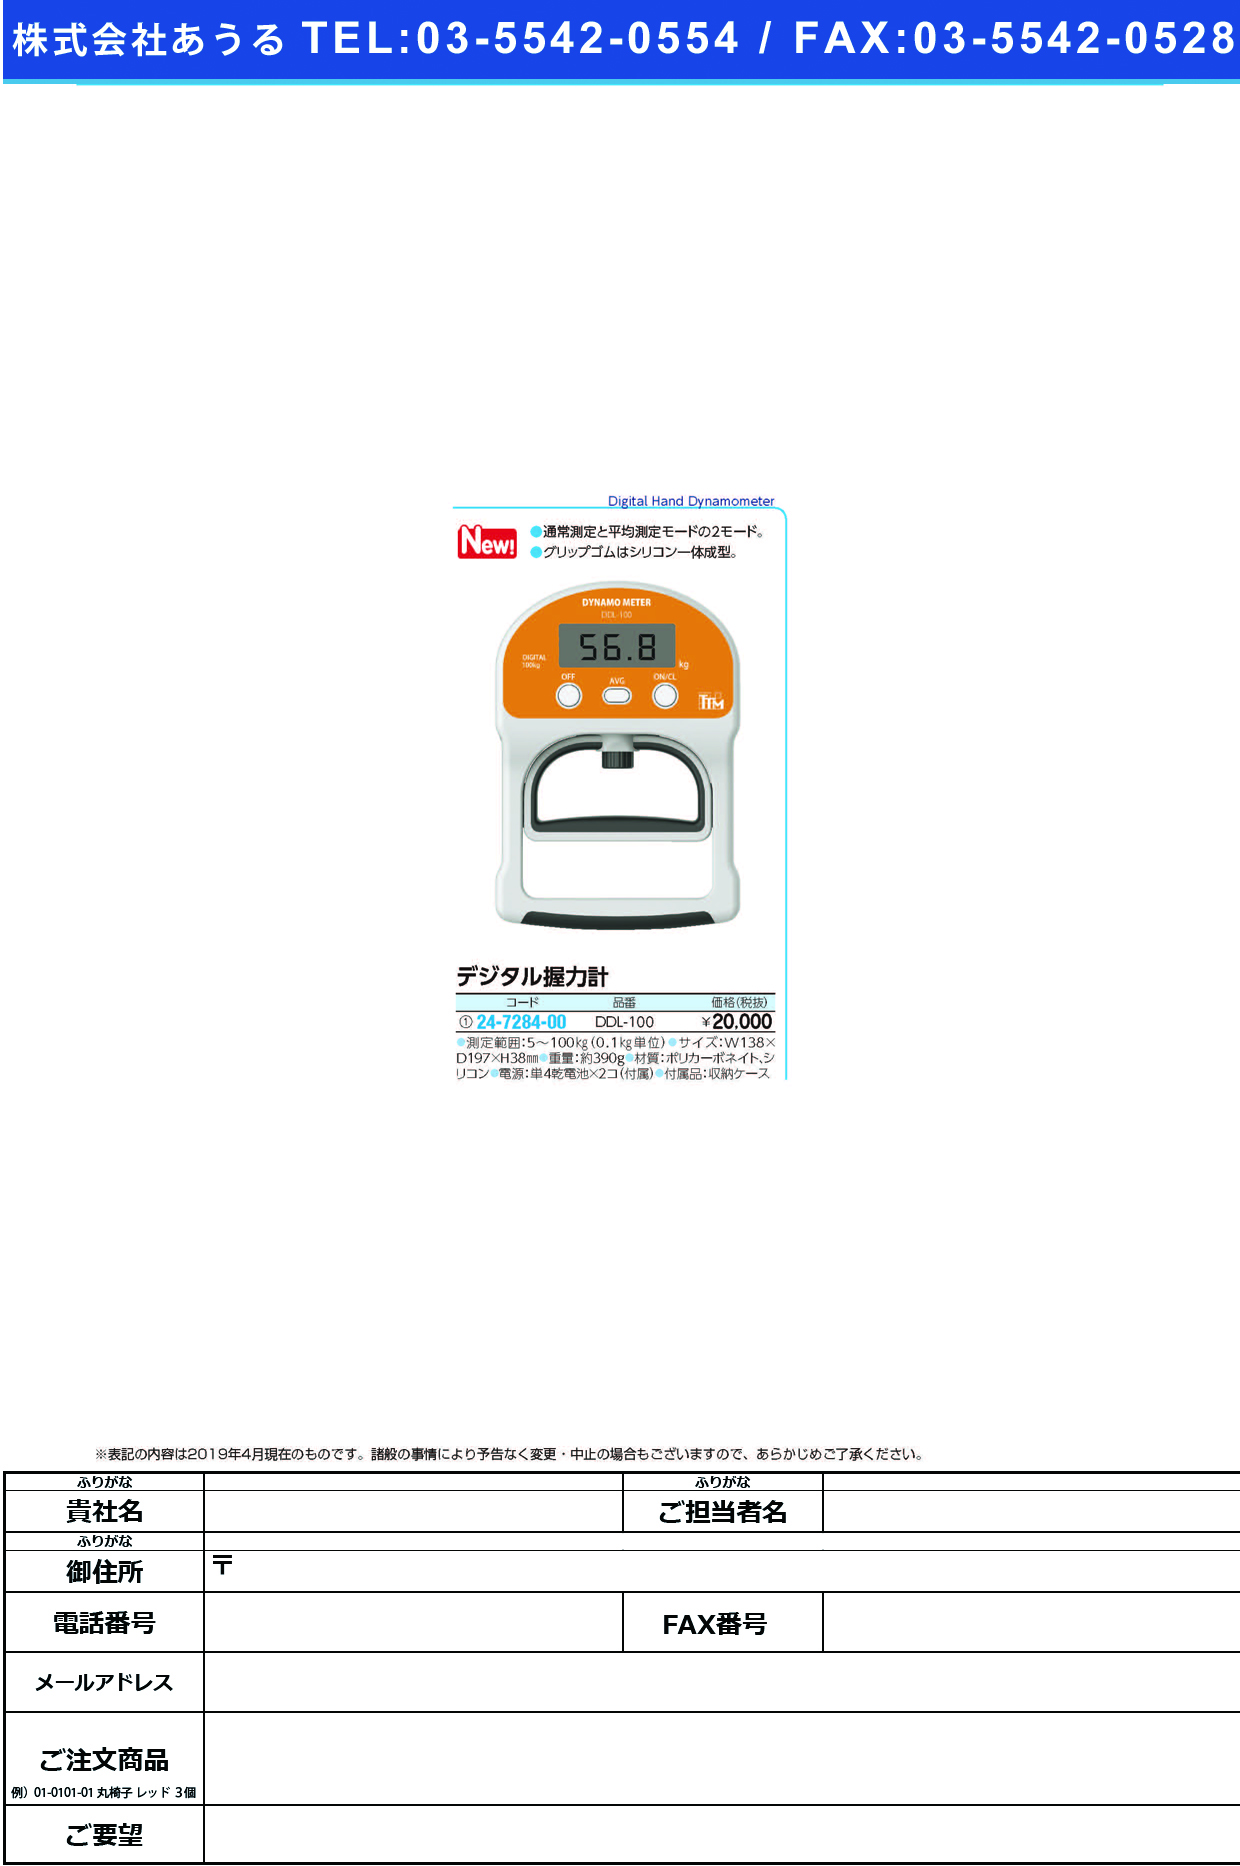 (24-7284-00)デジタル握力計DDL-100 ﾃﾞｼﾞﾀﾙｱｸﾘｮｸｹｲ(ツツミ)【1台単位】【2019年カタログ商品】